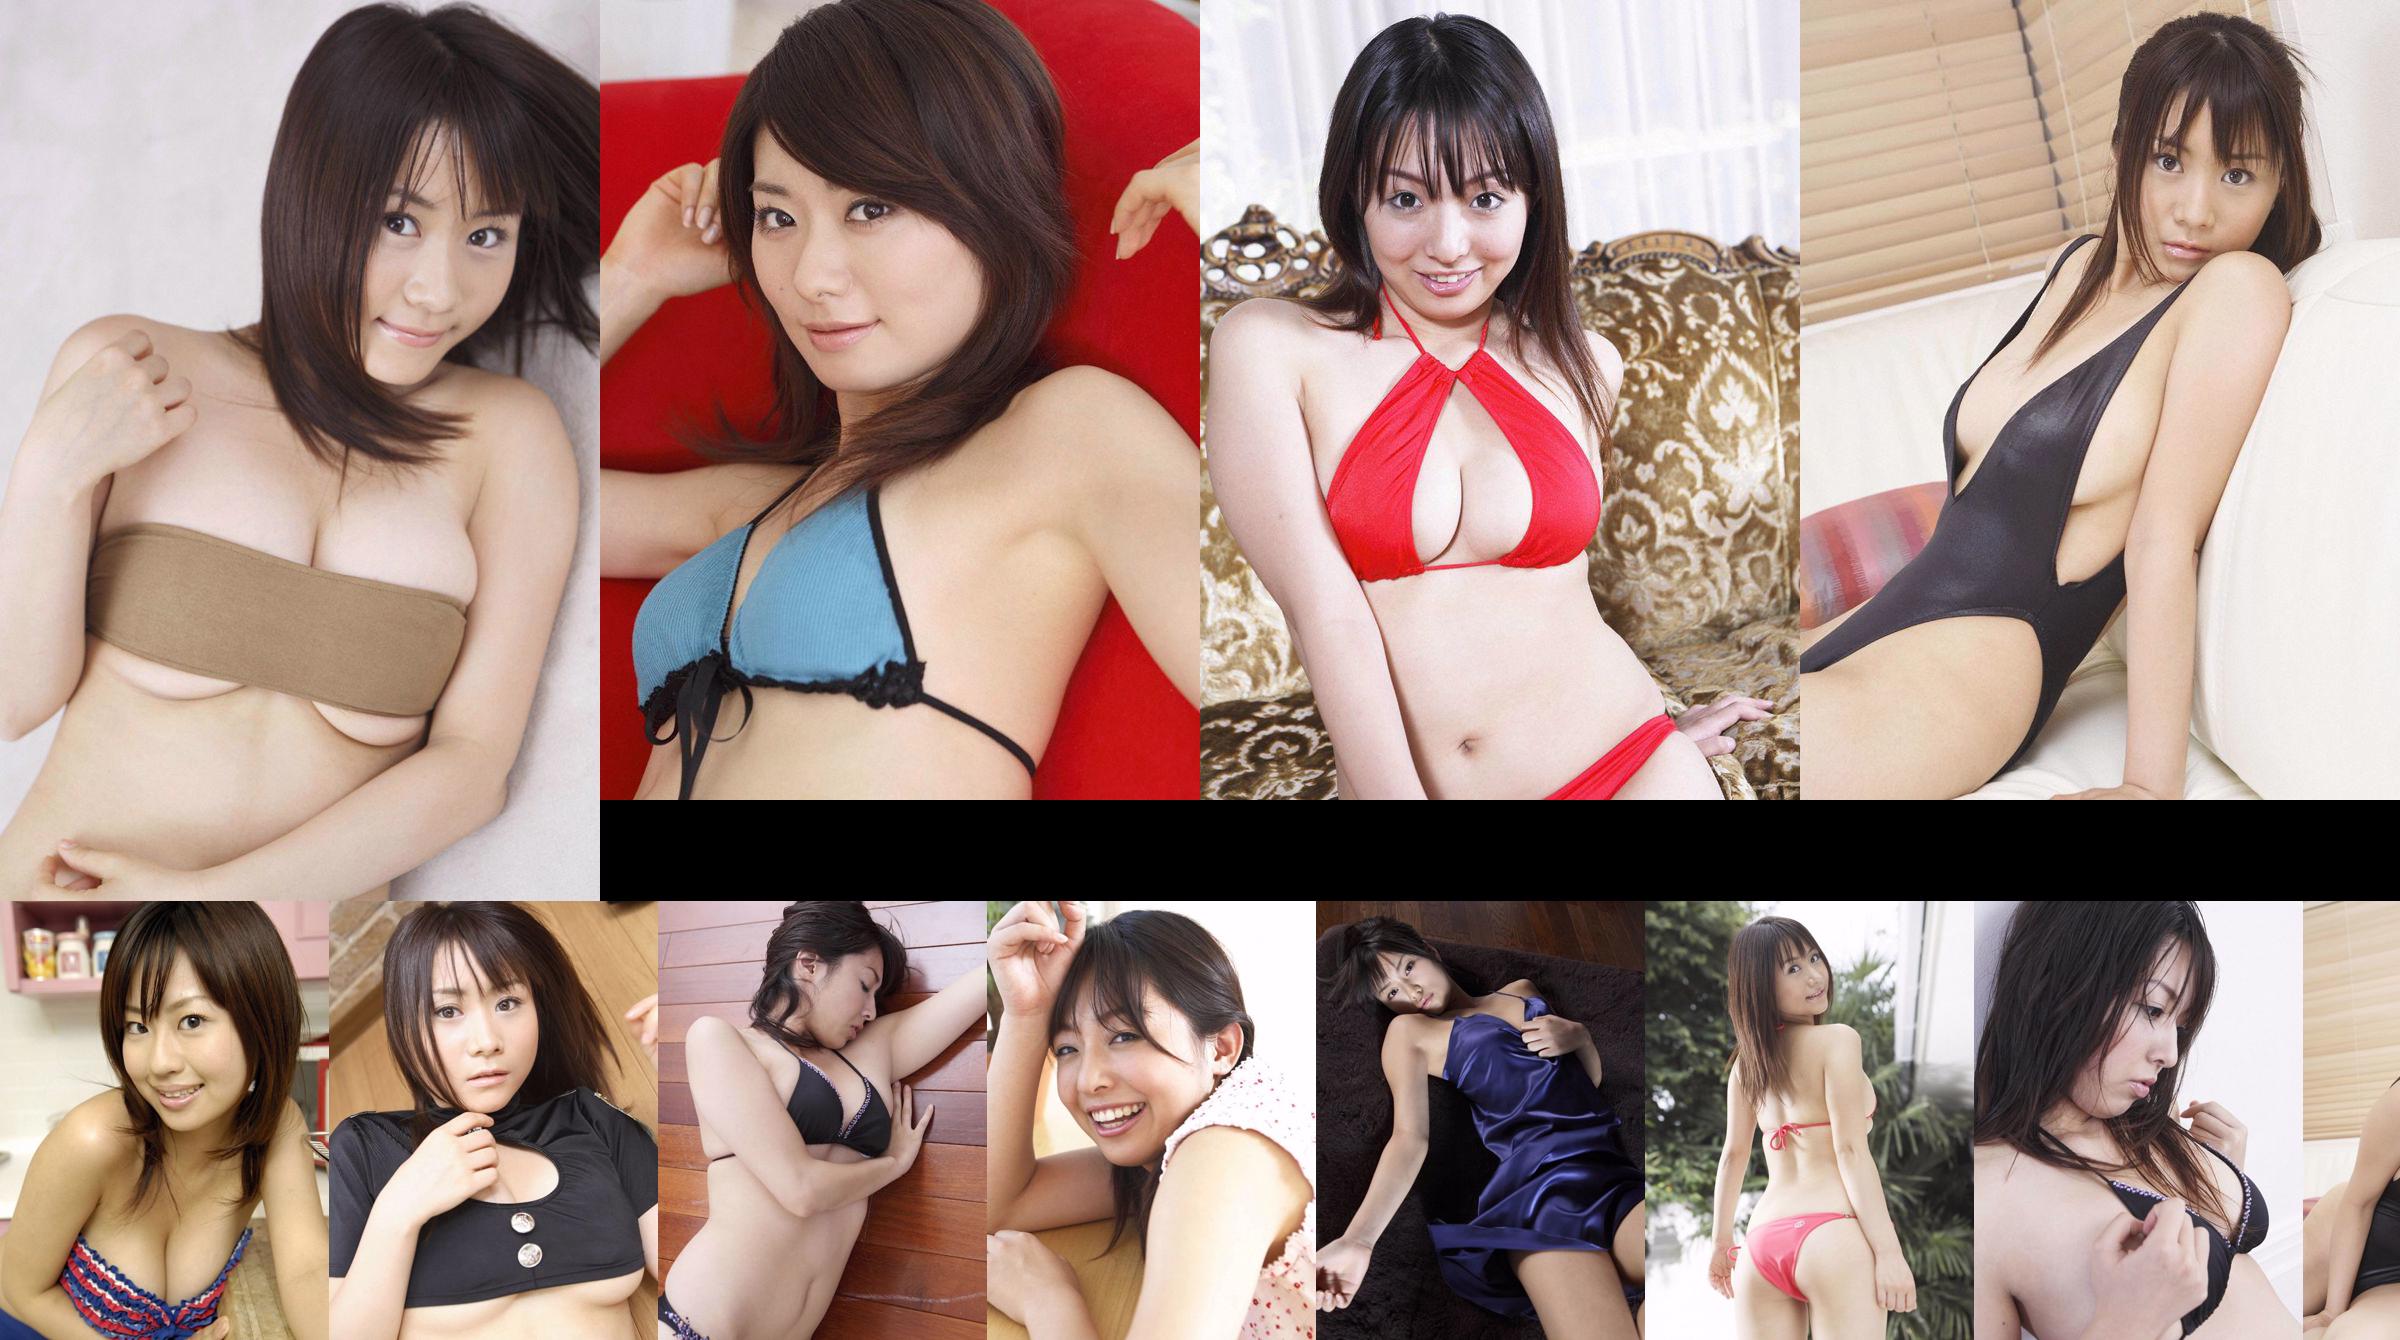 [Wanibooks] NO.37 Ai Arakawa, Hitomi Kaikawa, Hitomi Kitamura, Naomi I, Chii Matsuda Photo Collection No.0f0853 Page 35